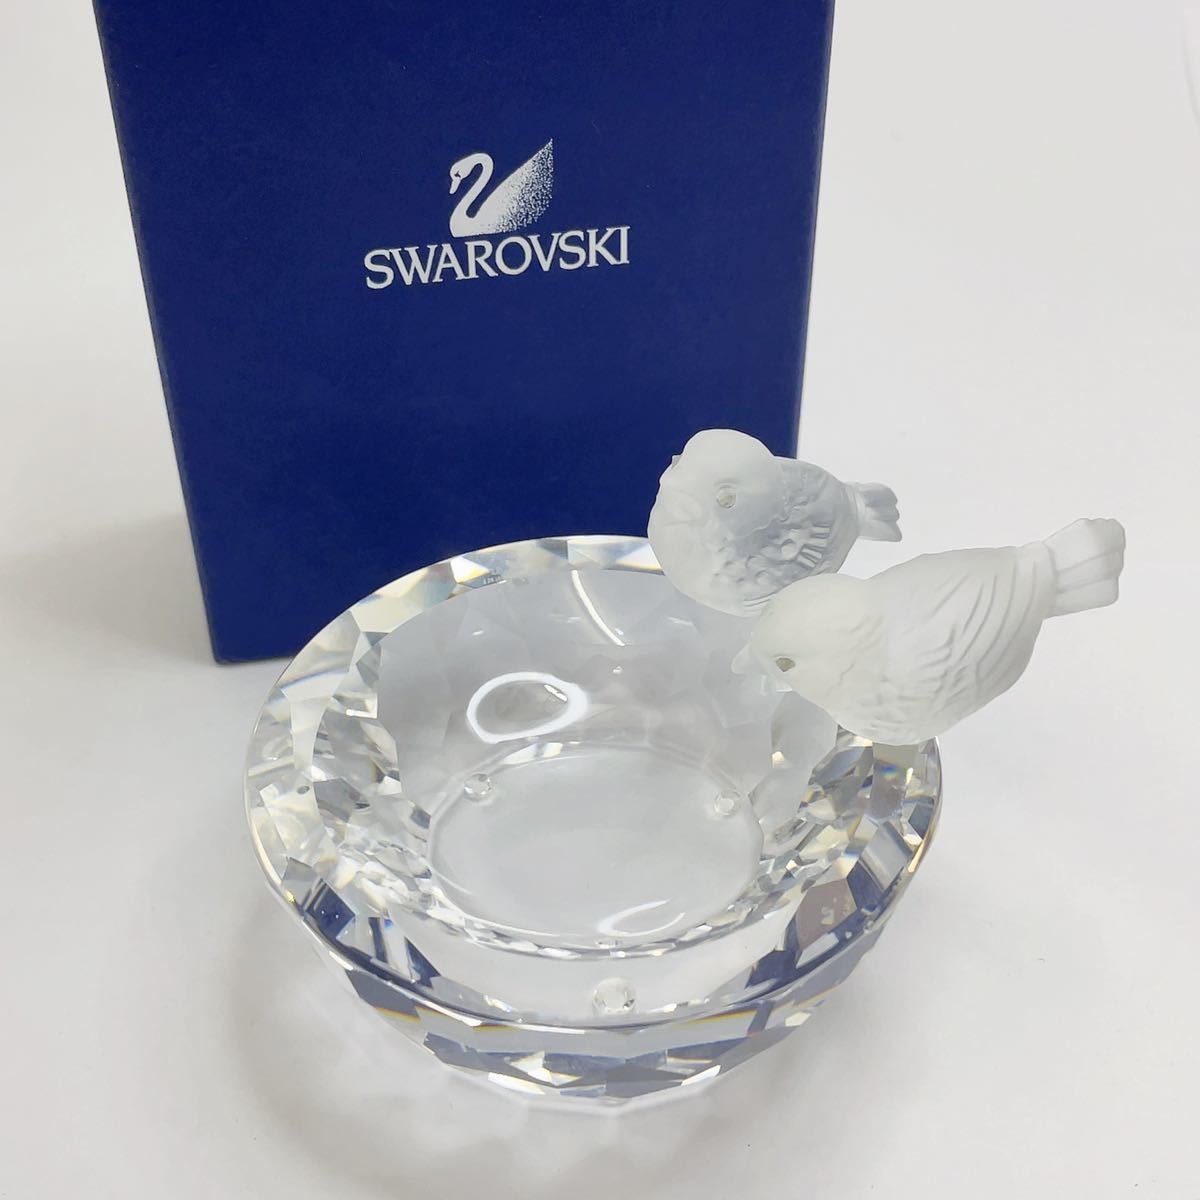 2007年 廃盤品 レア】swarovski bird Bath スワロフスキー 小鳥の水盤